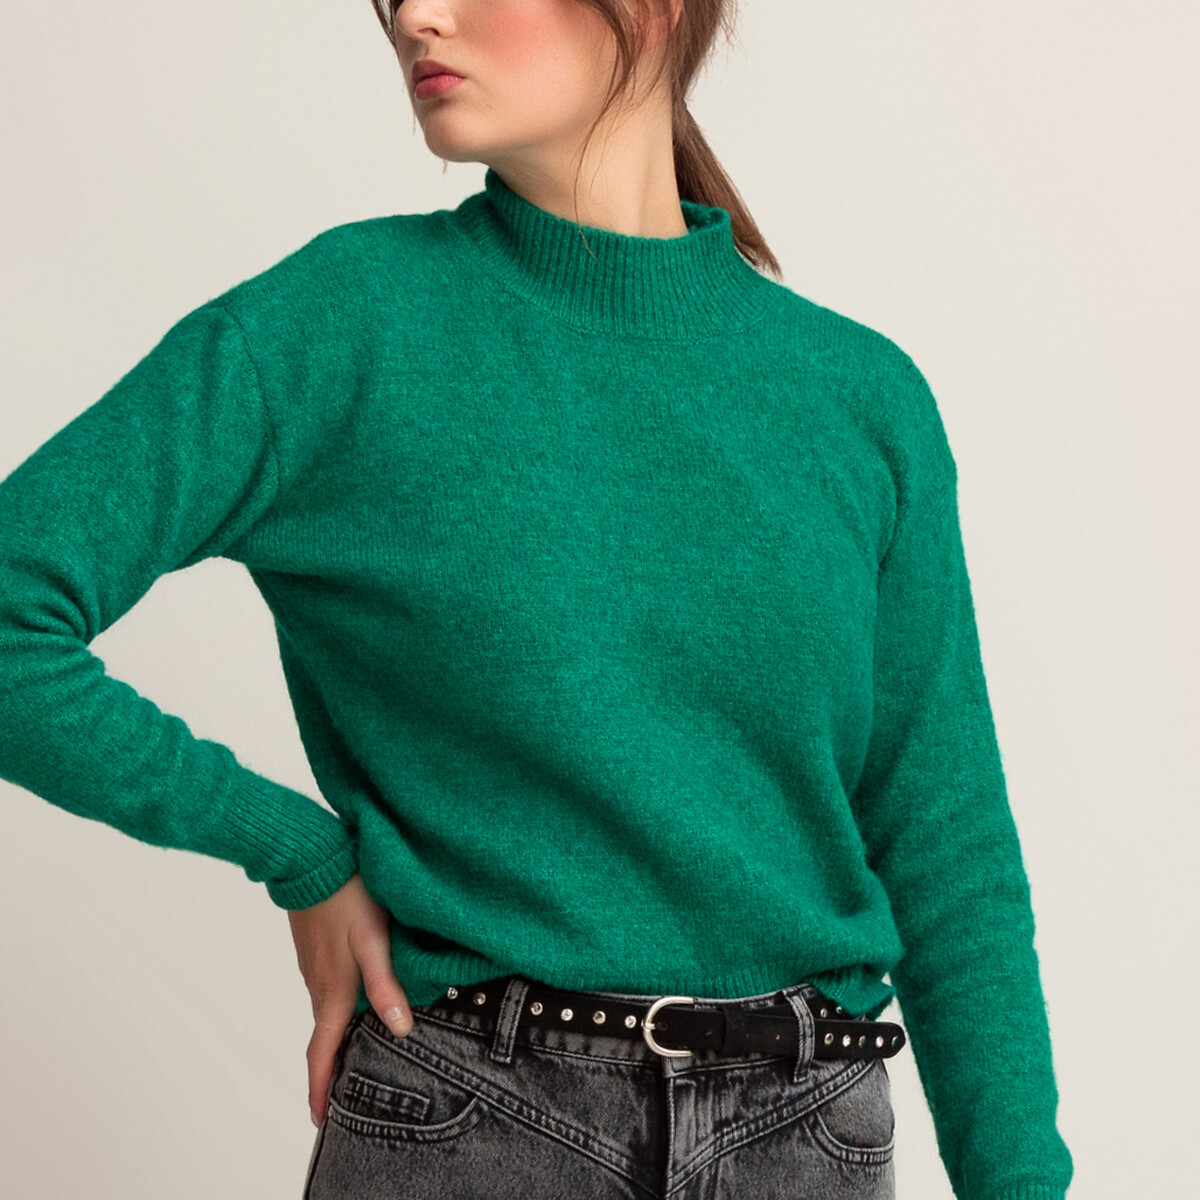 Пуловер La Redoute С воротником-стойкой пушистый трикотаж XL зеленый, размер XL - фото 1